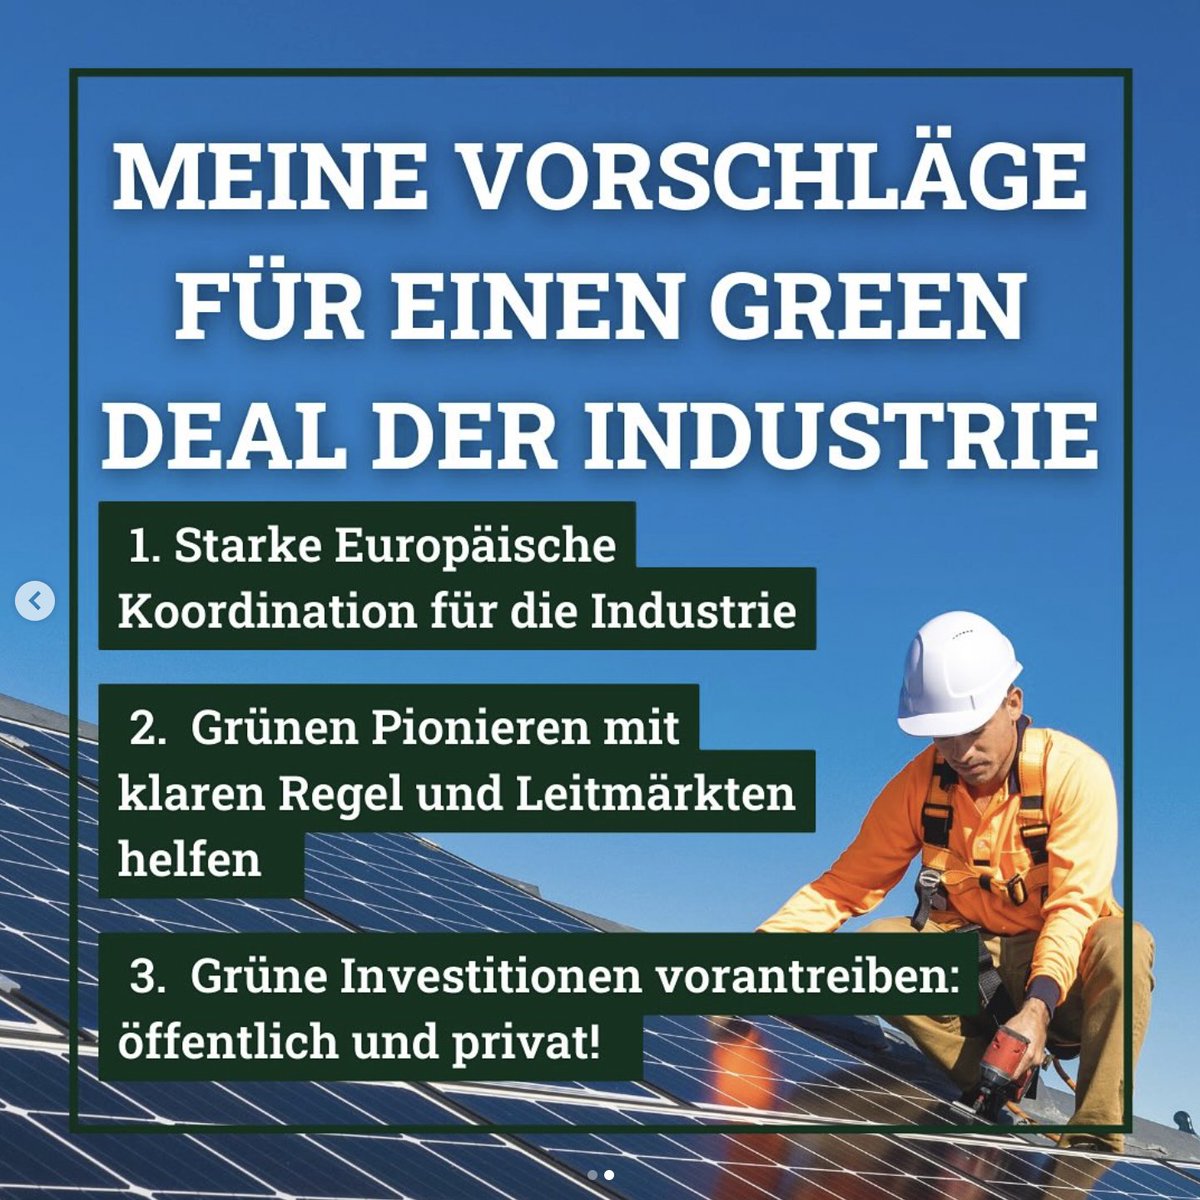 Wir müssen in Europa investieren - in E-Autos, Erneuerbaren-Technologie und Produktion, grünen Wasserstoff und Batterien. Dafür schlage ich eine grüne europäische Industriepolitik vor: michaelbloss.eu/de/presse/them…